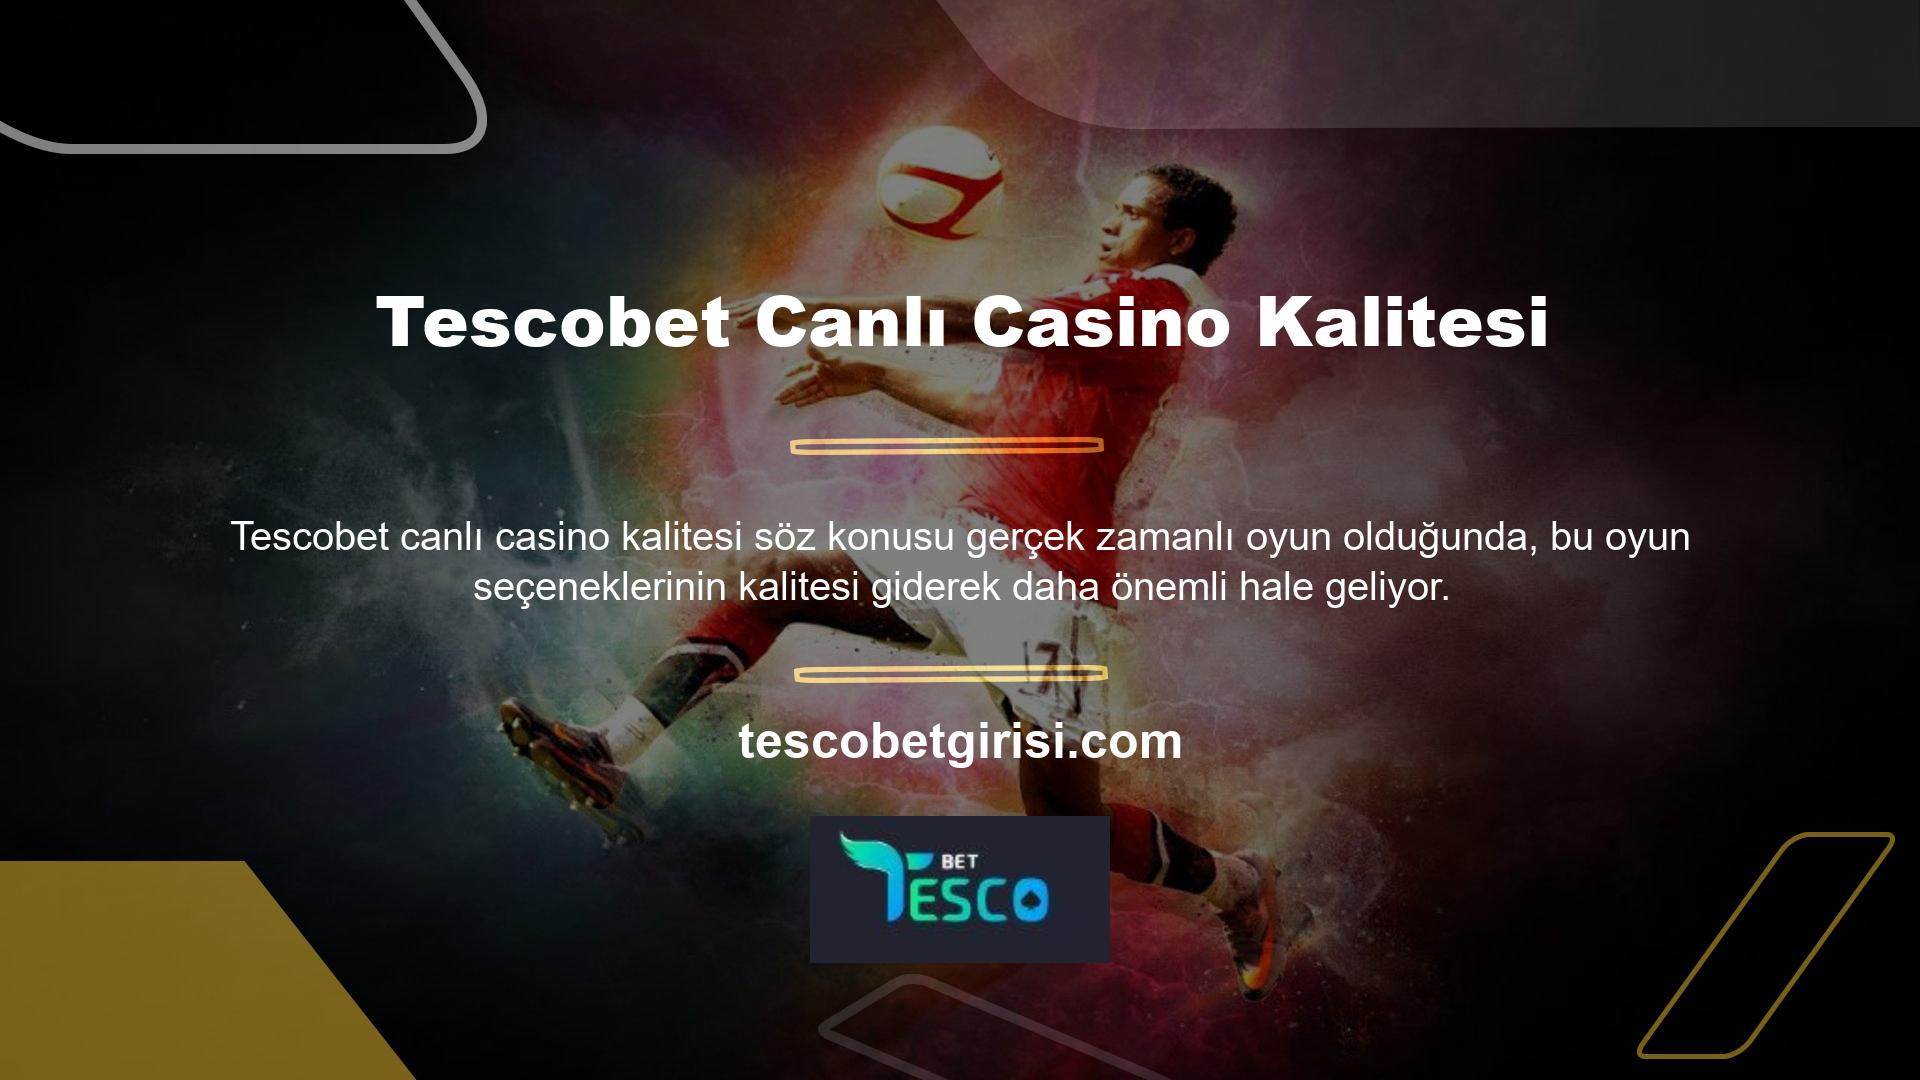 Bu nedenle Tescobet canlı casinosunin kalitesi üye olmadan ve yatırım yapmadan önce üzerinde çalışılan sorulardan biridir